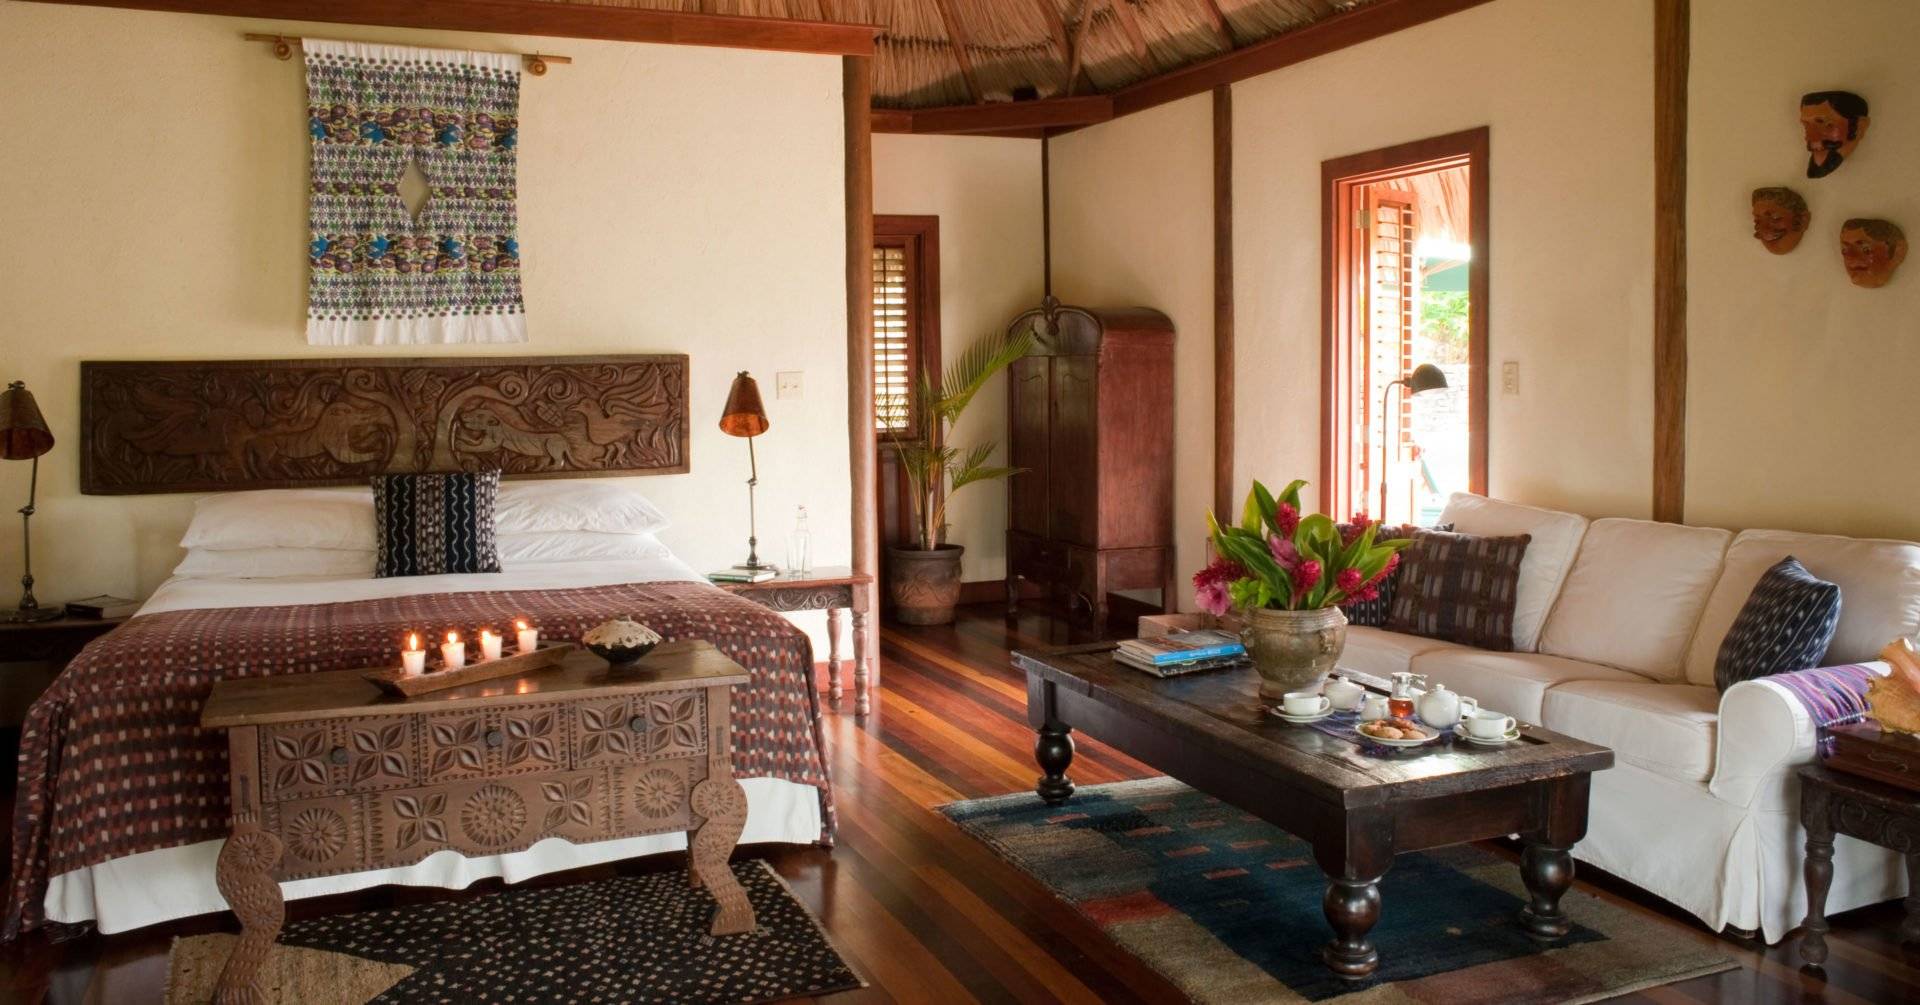 Belize, Blancaneaux Lodge, Luxury Cabana, Latin America Tours